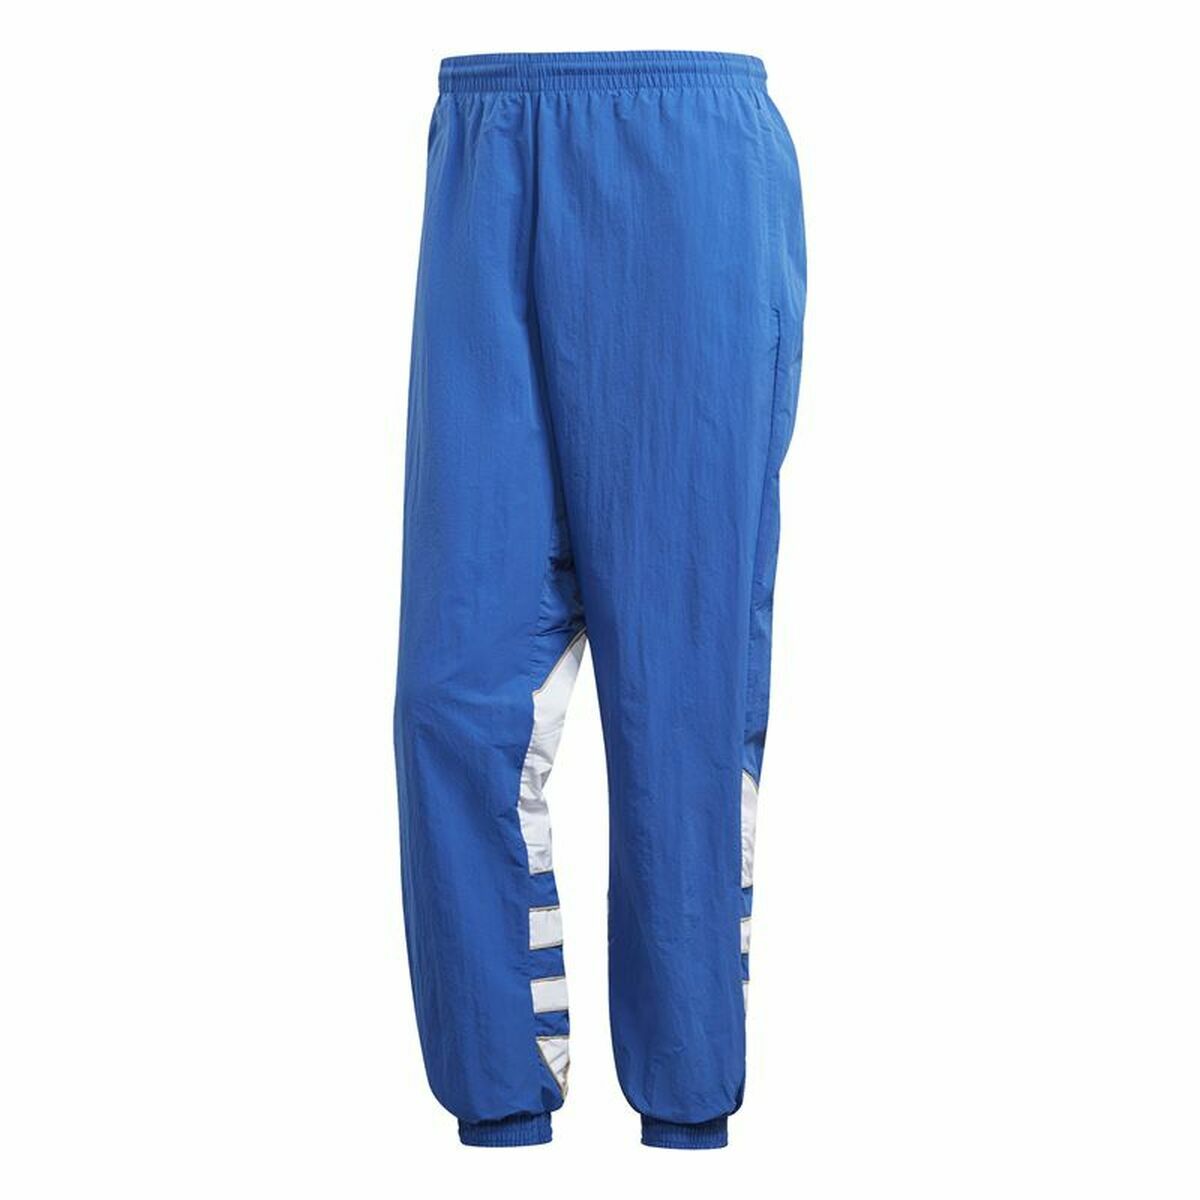 Pantalon de Survêtement pour Adultes Adidas Trefoil Bleu Homme